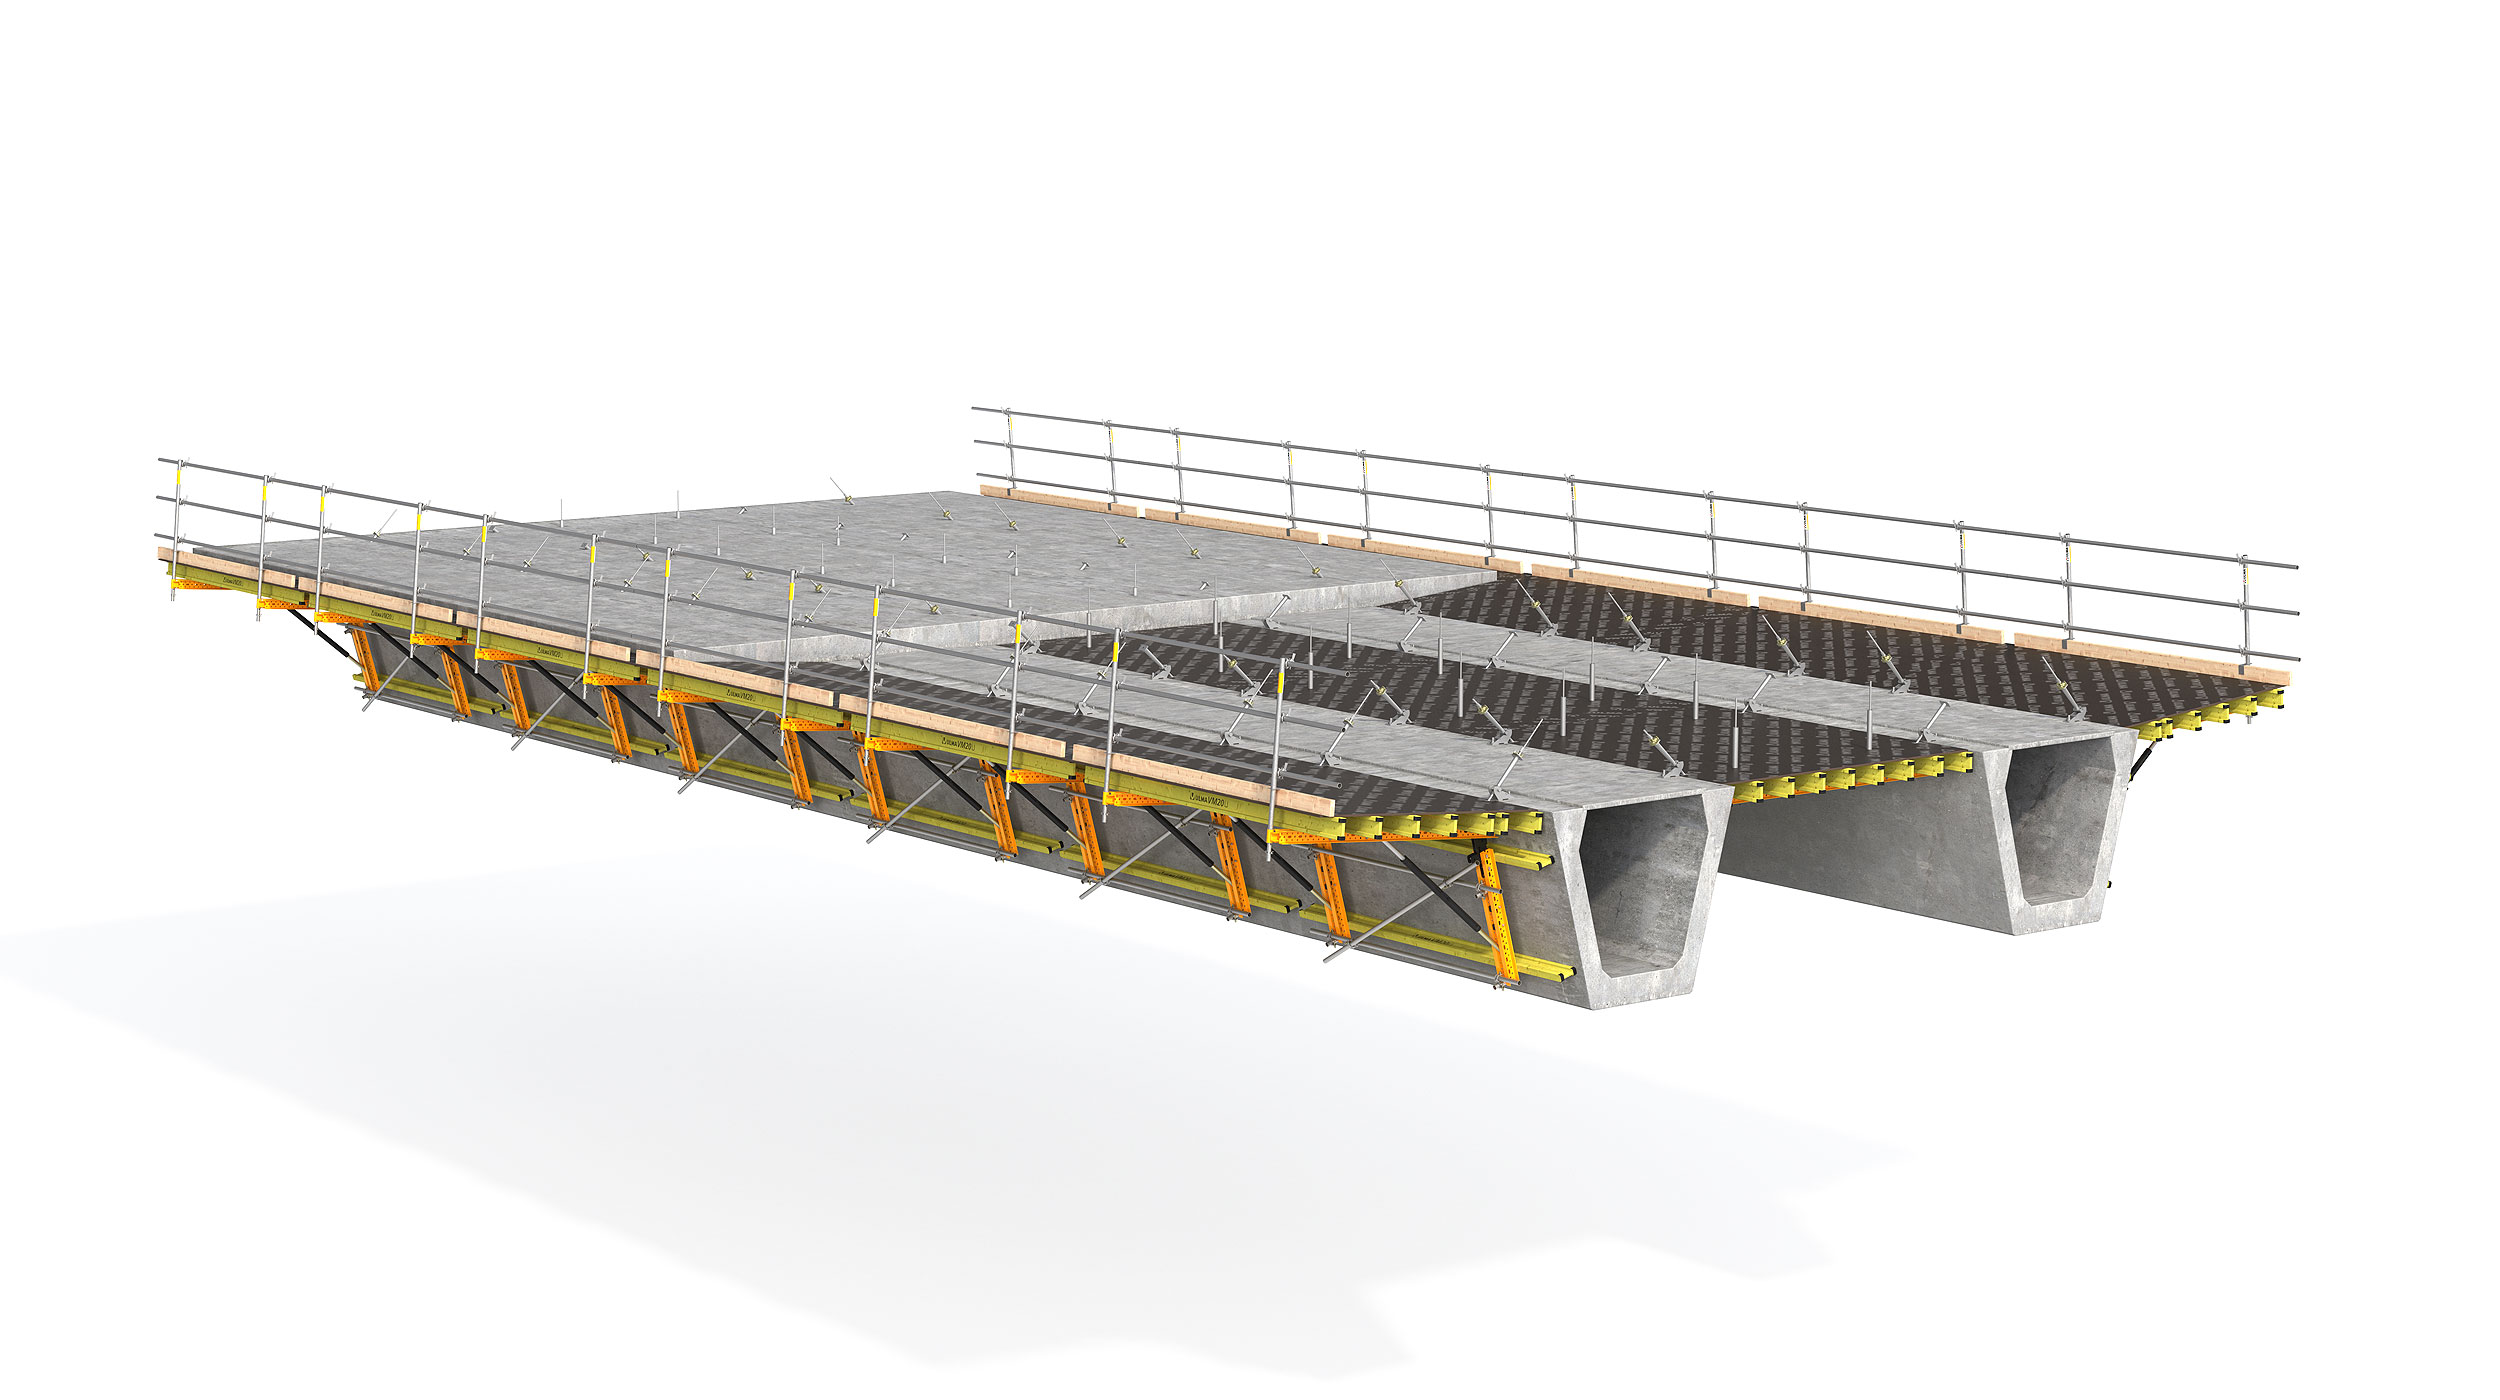 Cimbra modular para colar las alas o losa central de puentes con núcleo metálico o concreto prefabricado. Característica destacable: la seguridad del sistema.